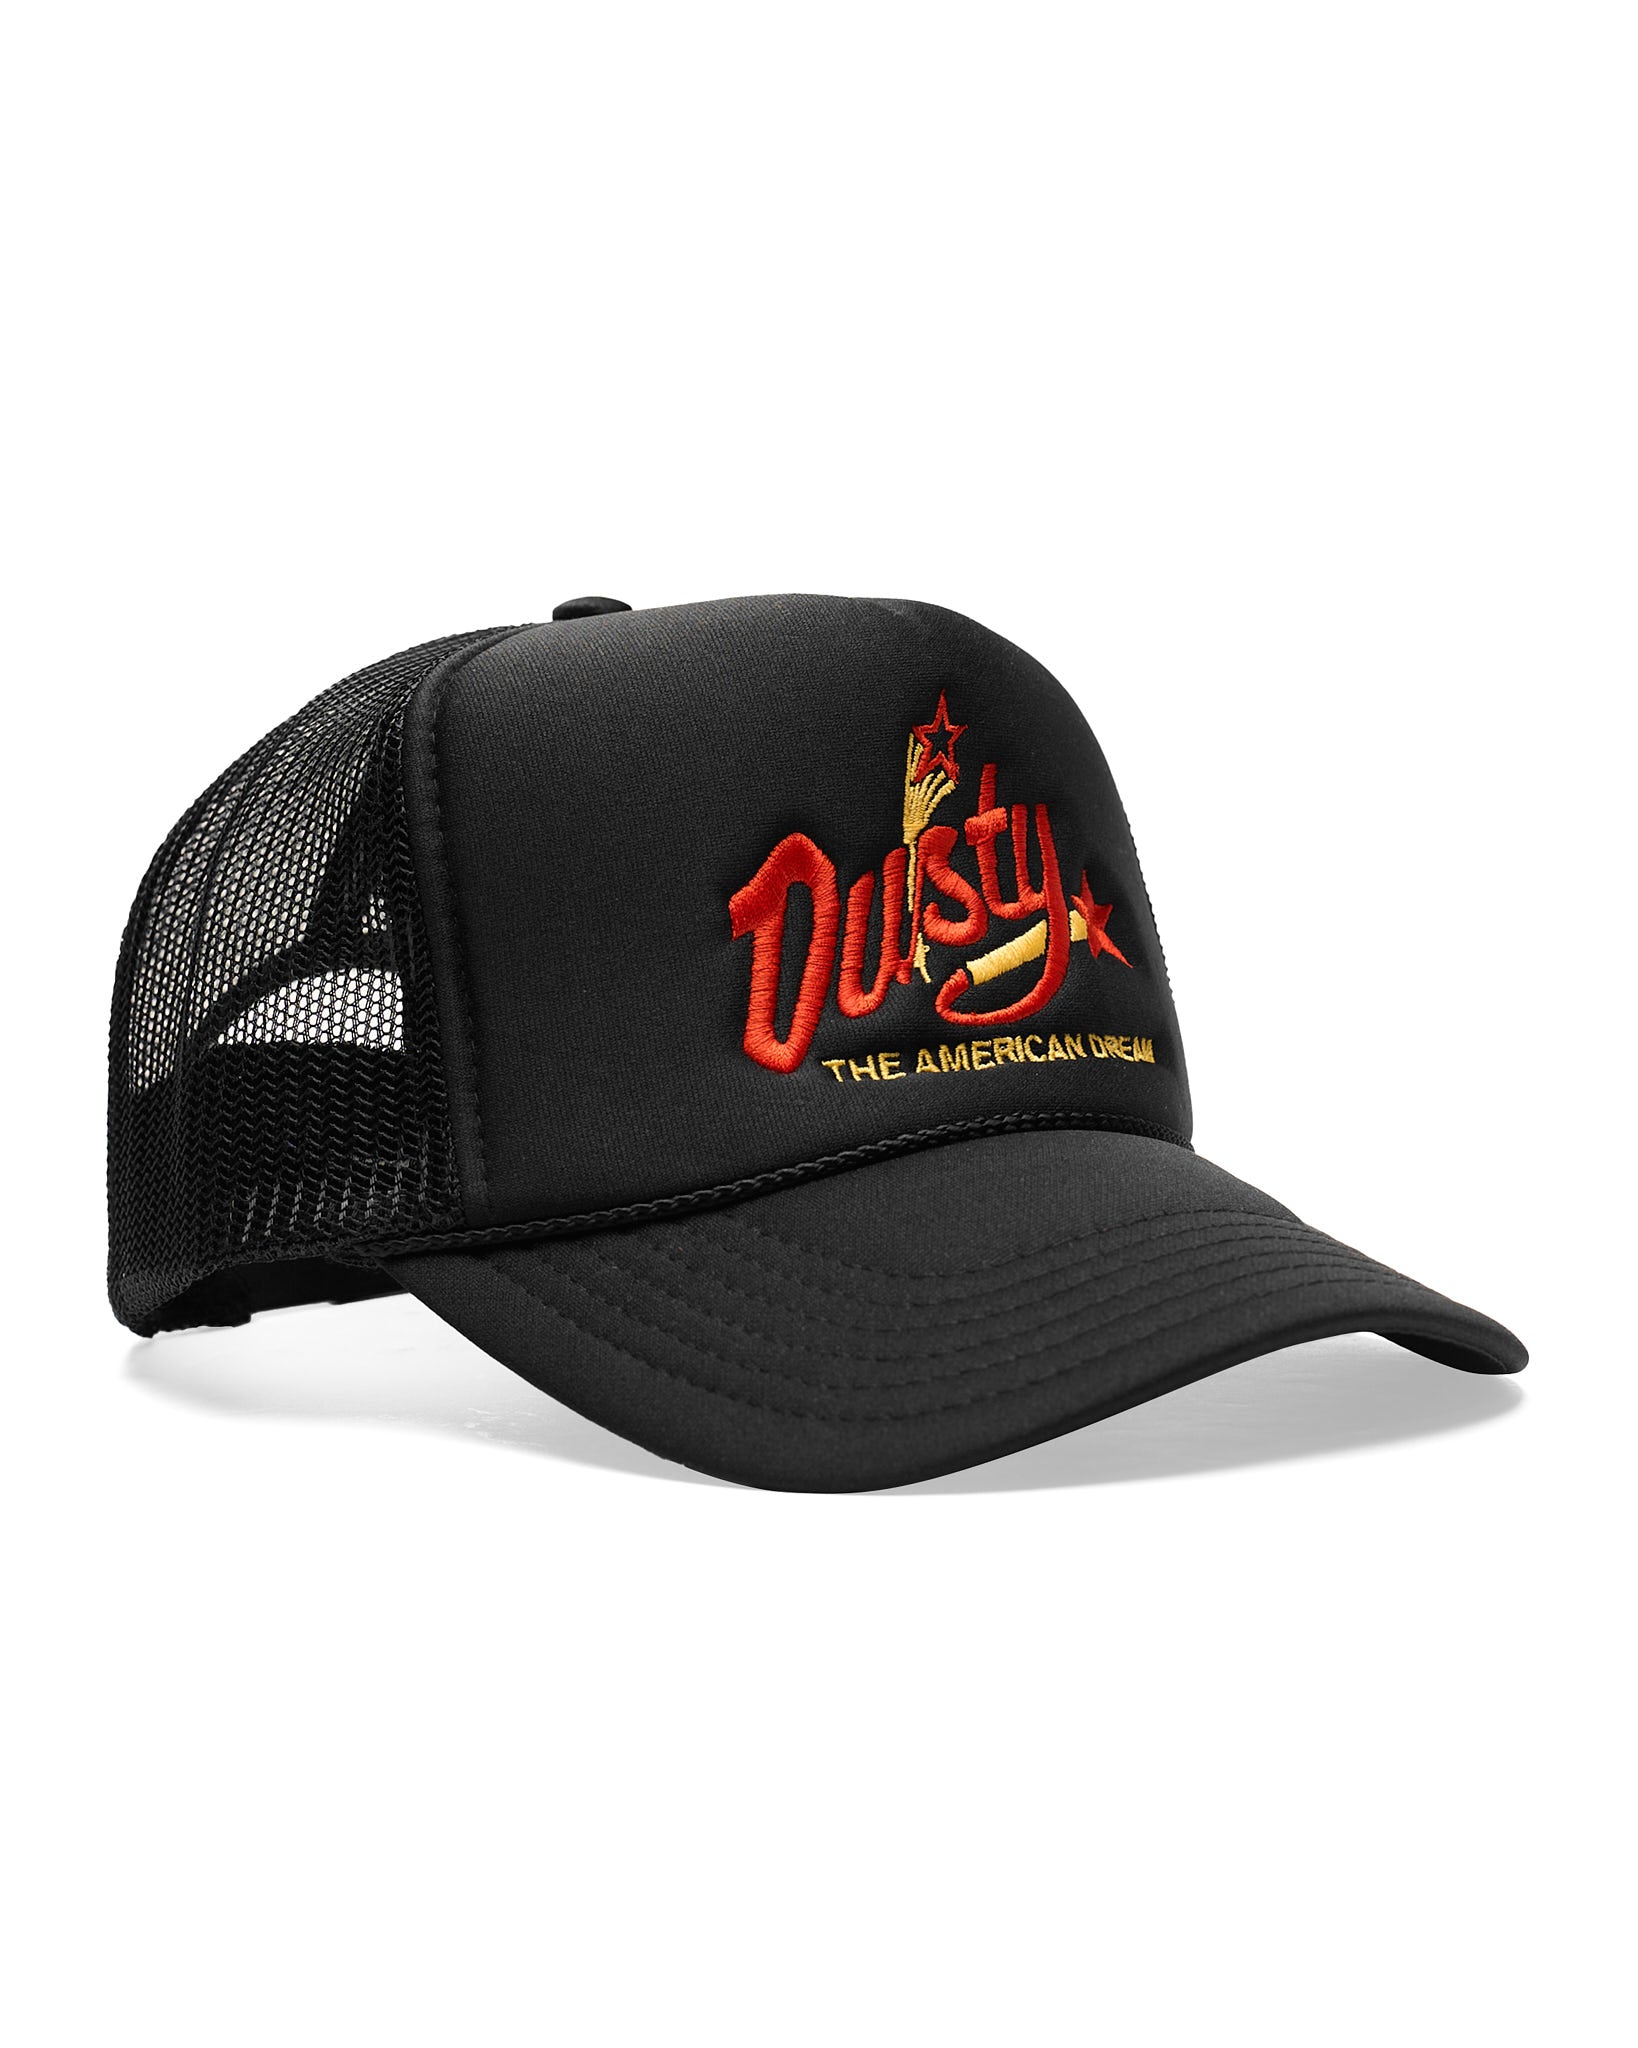 Dusty Rhodes American Dream Trucker Hat